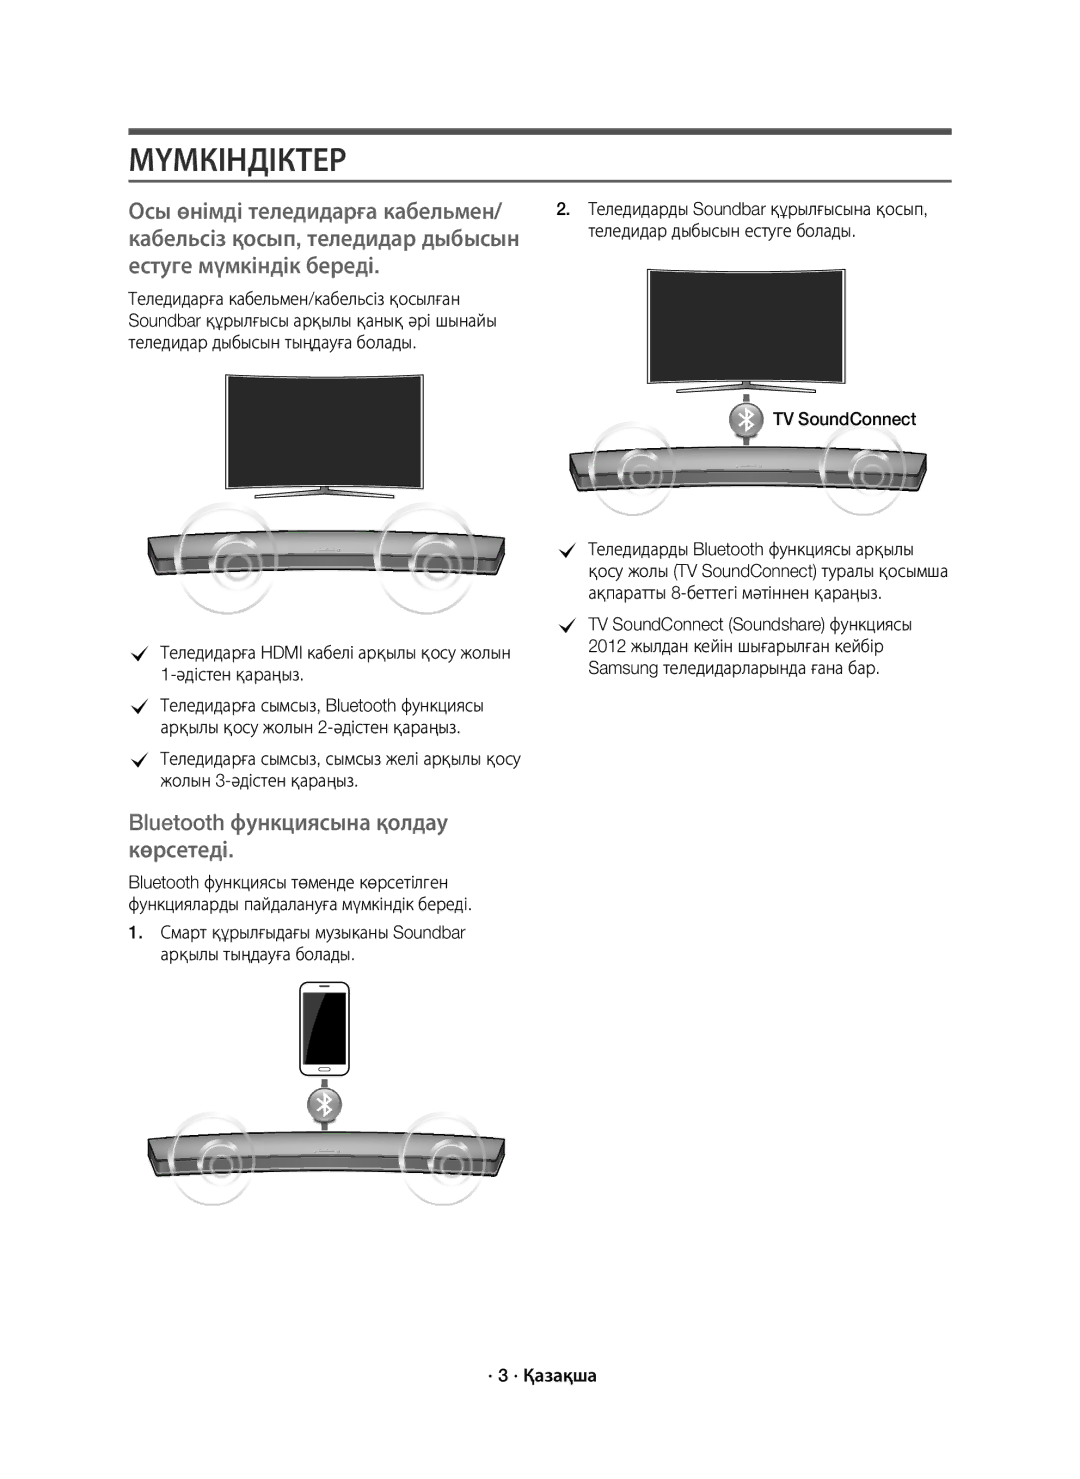 Samsung HW-J7500/RU manual Мүмкіндіктер, Теледидарға Hdmi кабелі арқылы қосу жолын 1-әдістен қараңыз, · 3 · Қазақша 